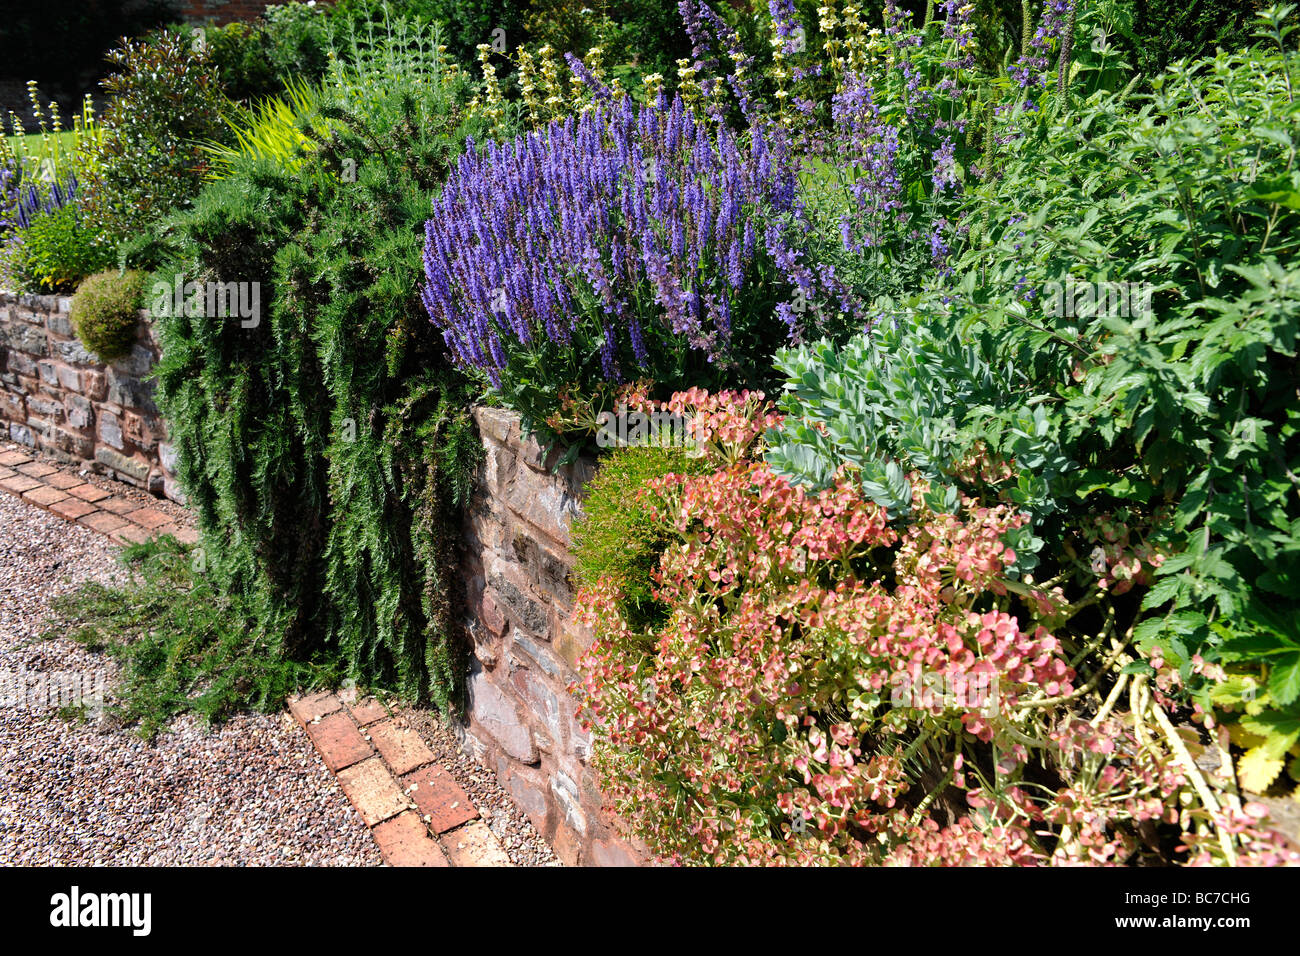 Paesaggistico giardino inglese in Corte Holcombe, Devon, Regno Unito Foto Stock